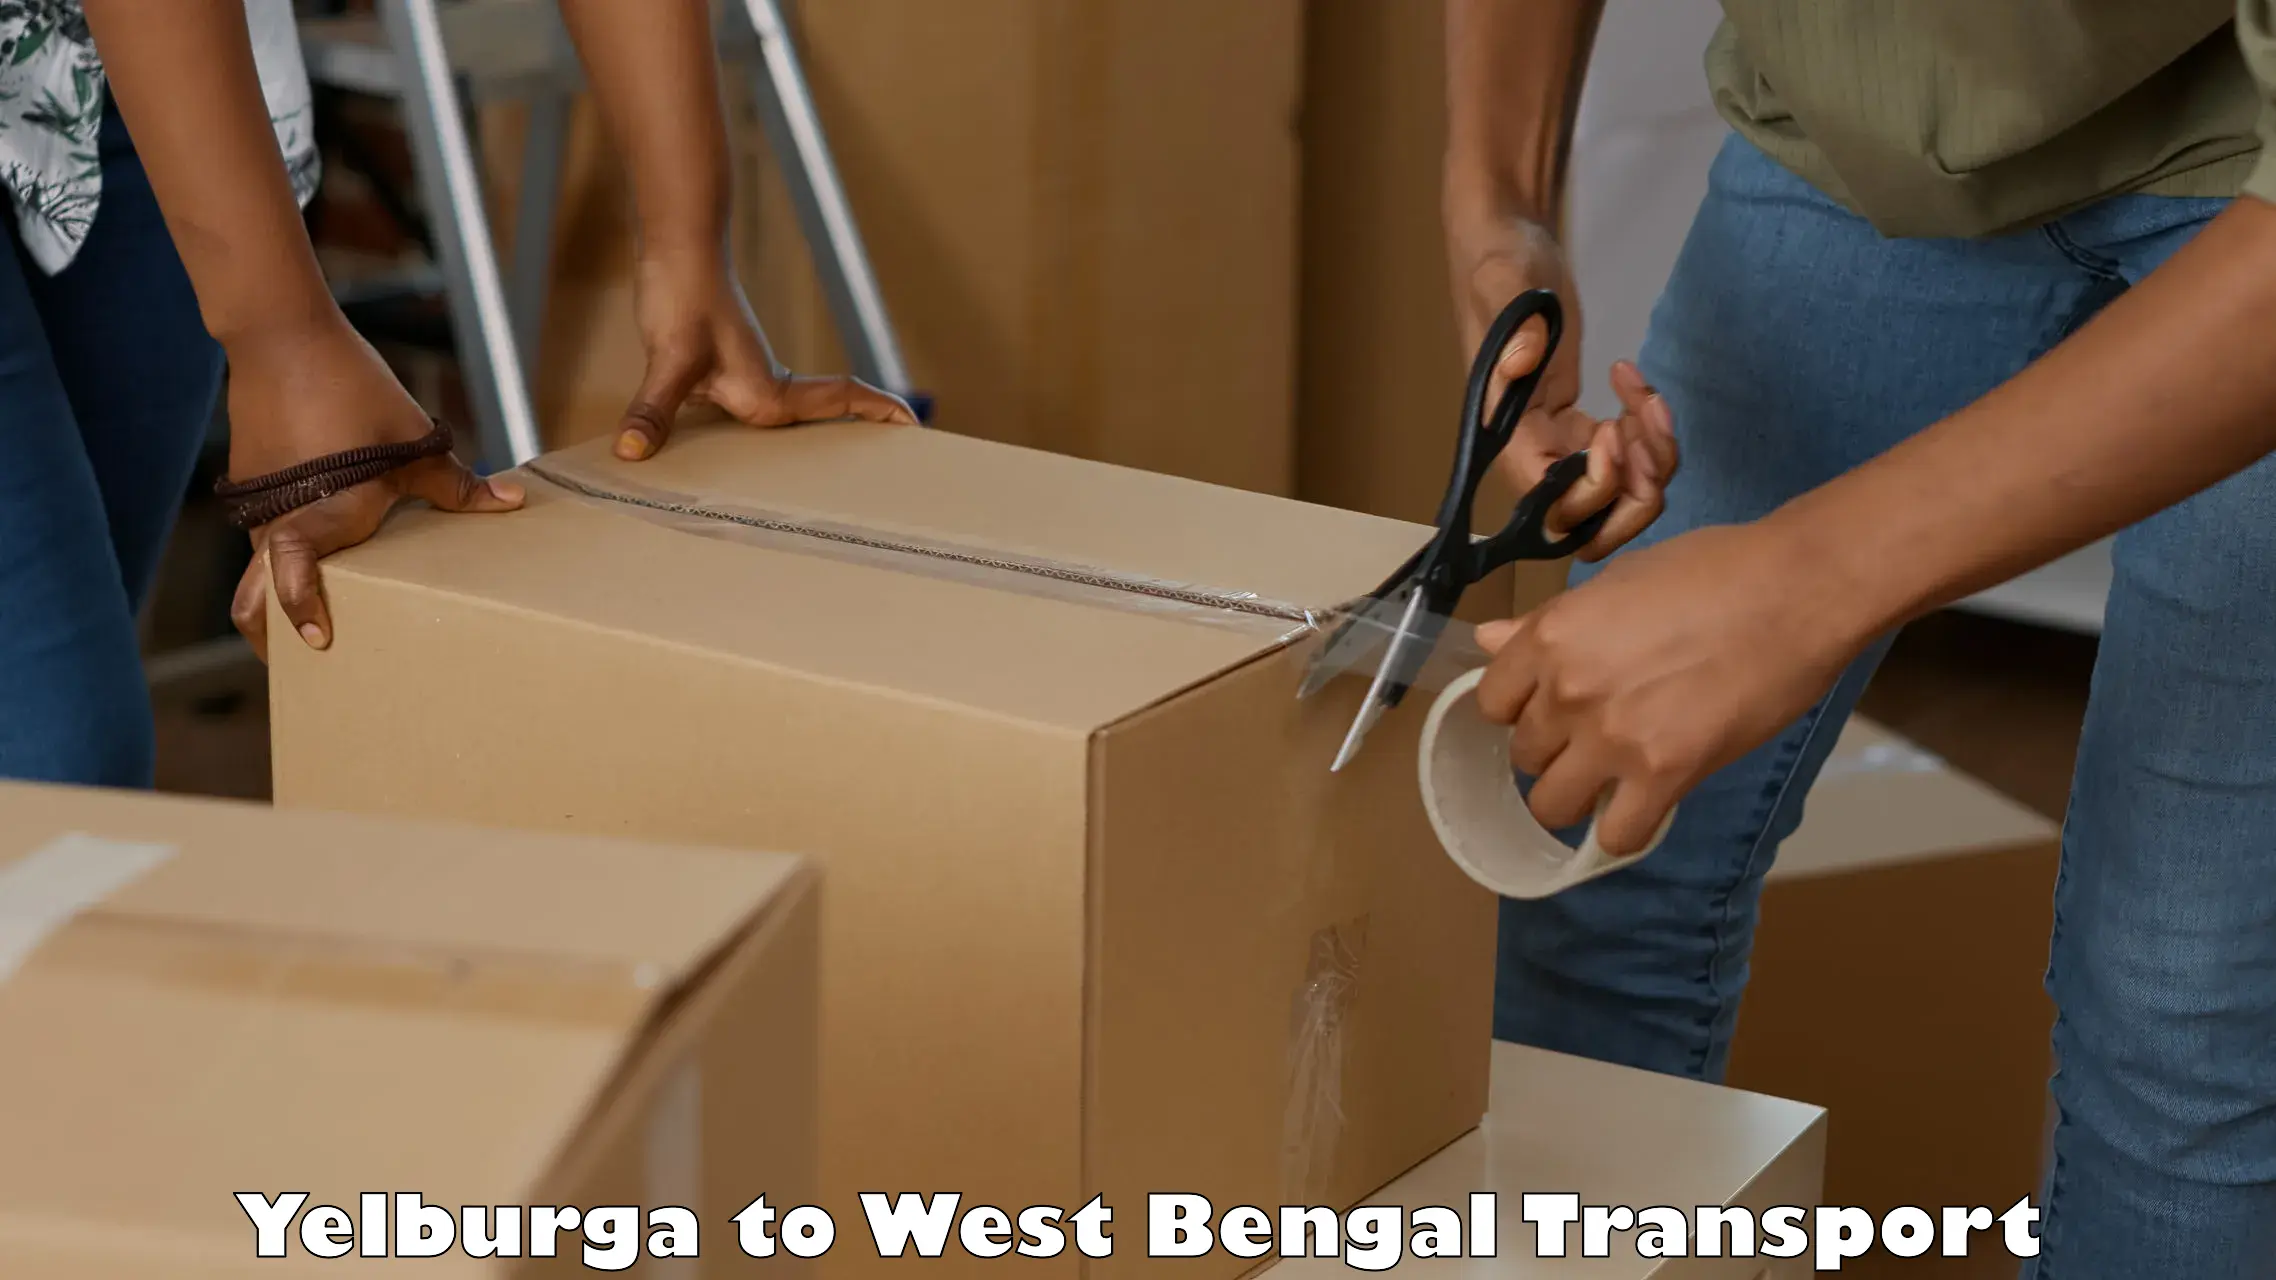 Furniture transport service Yelburga to West Bengal